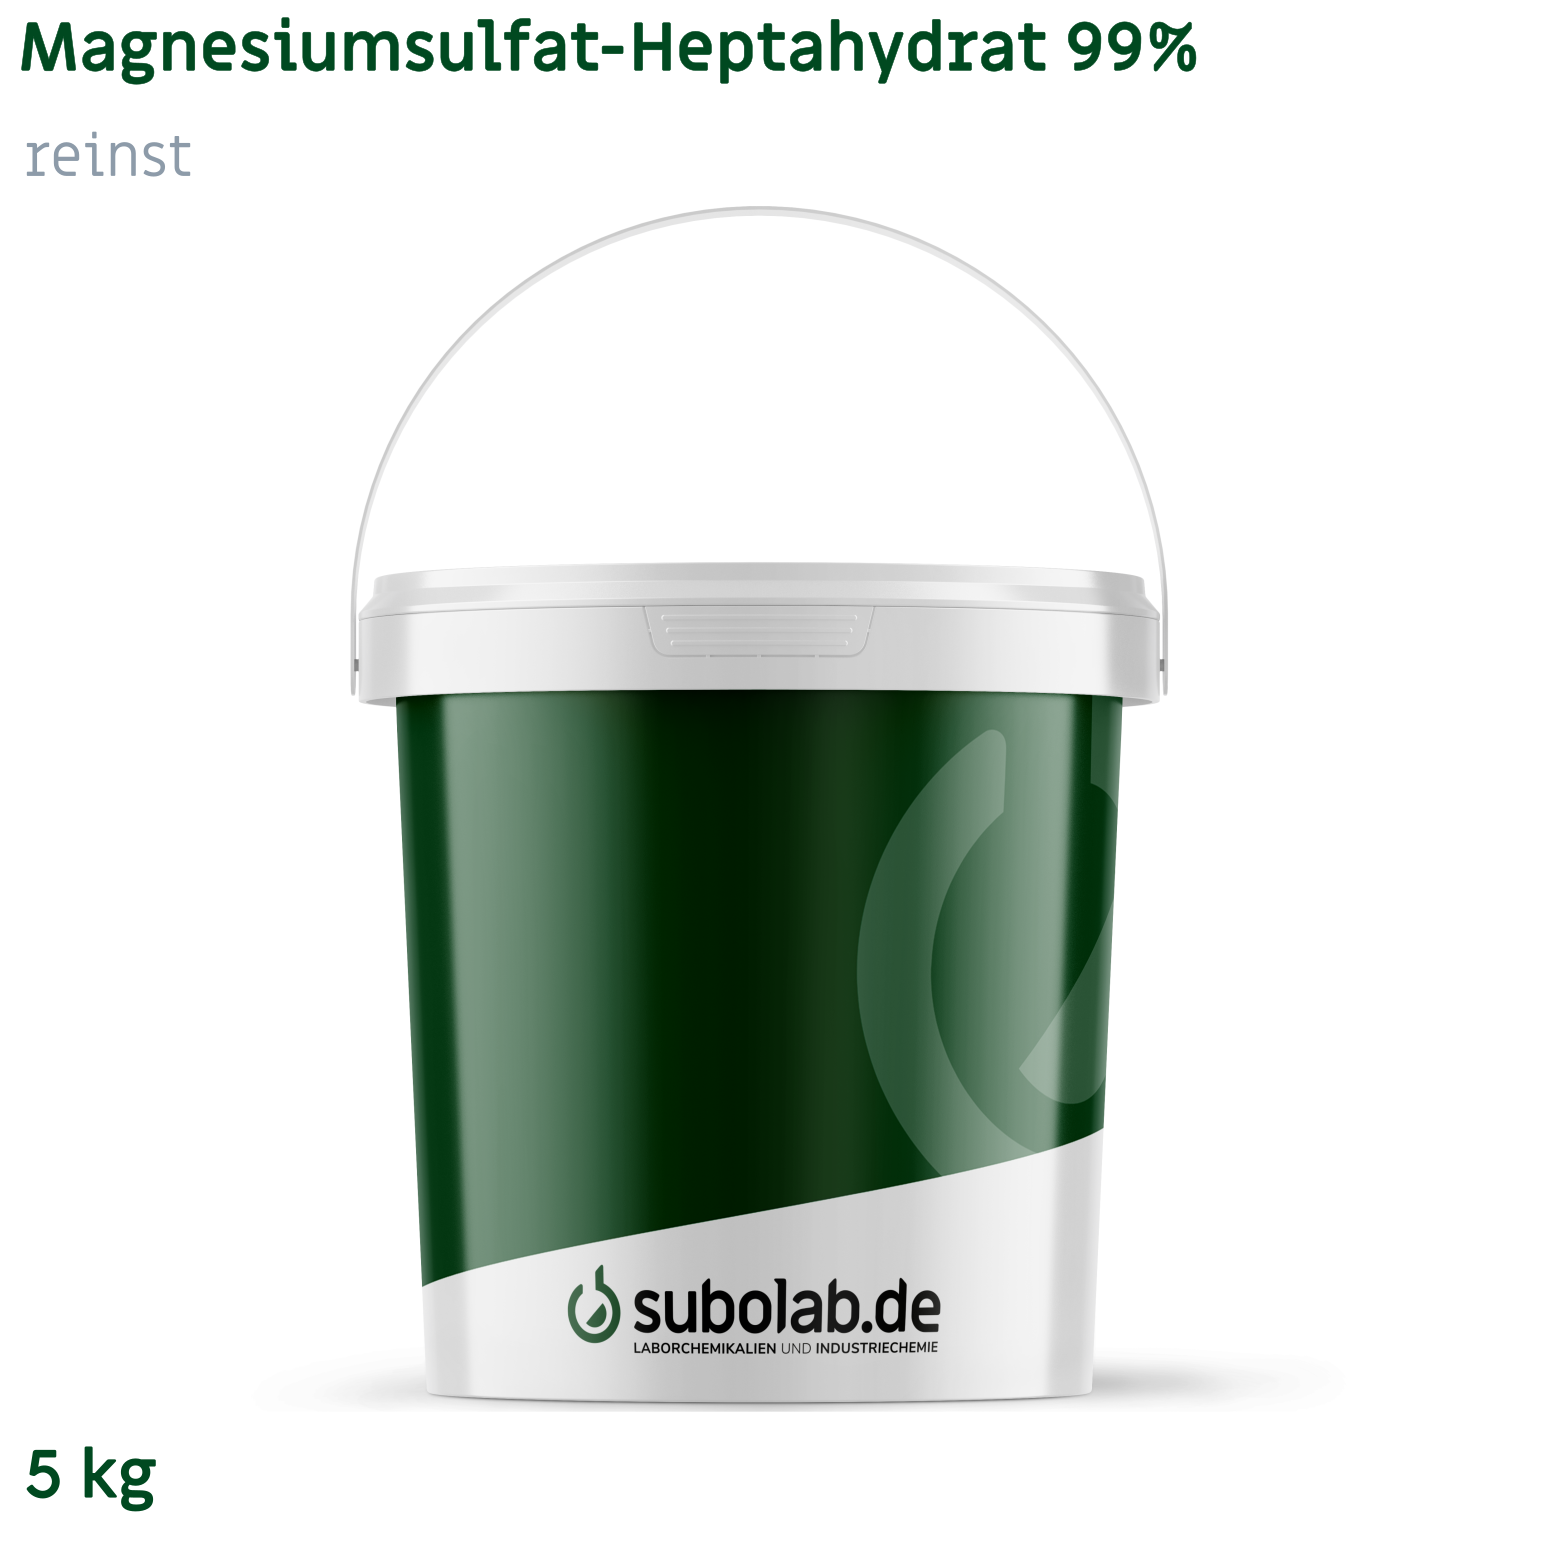 Bild von Magnesiumsulfat - Heptahydrat 99% reinst (5 kg)